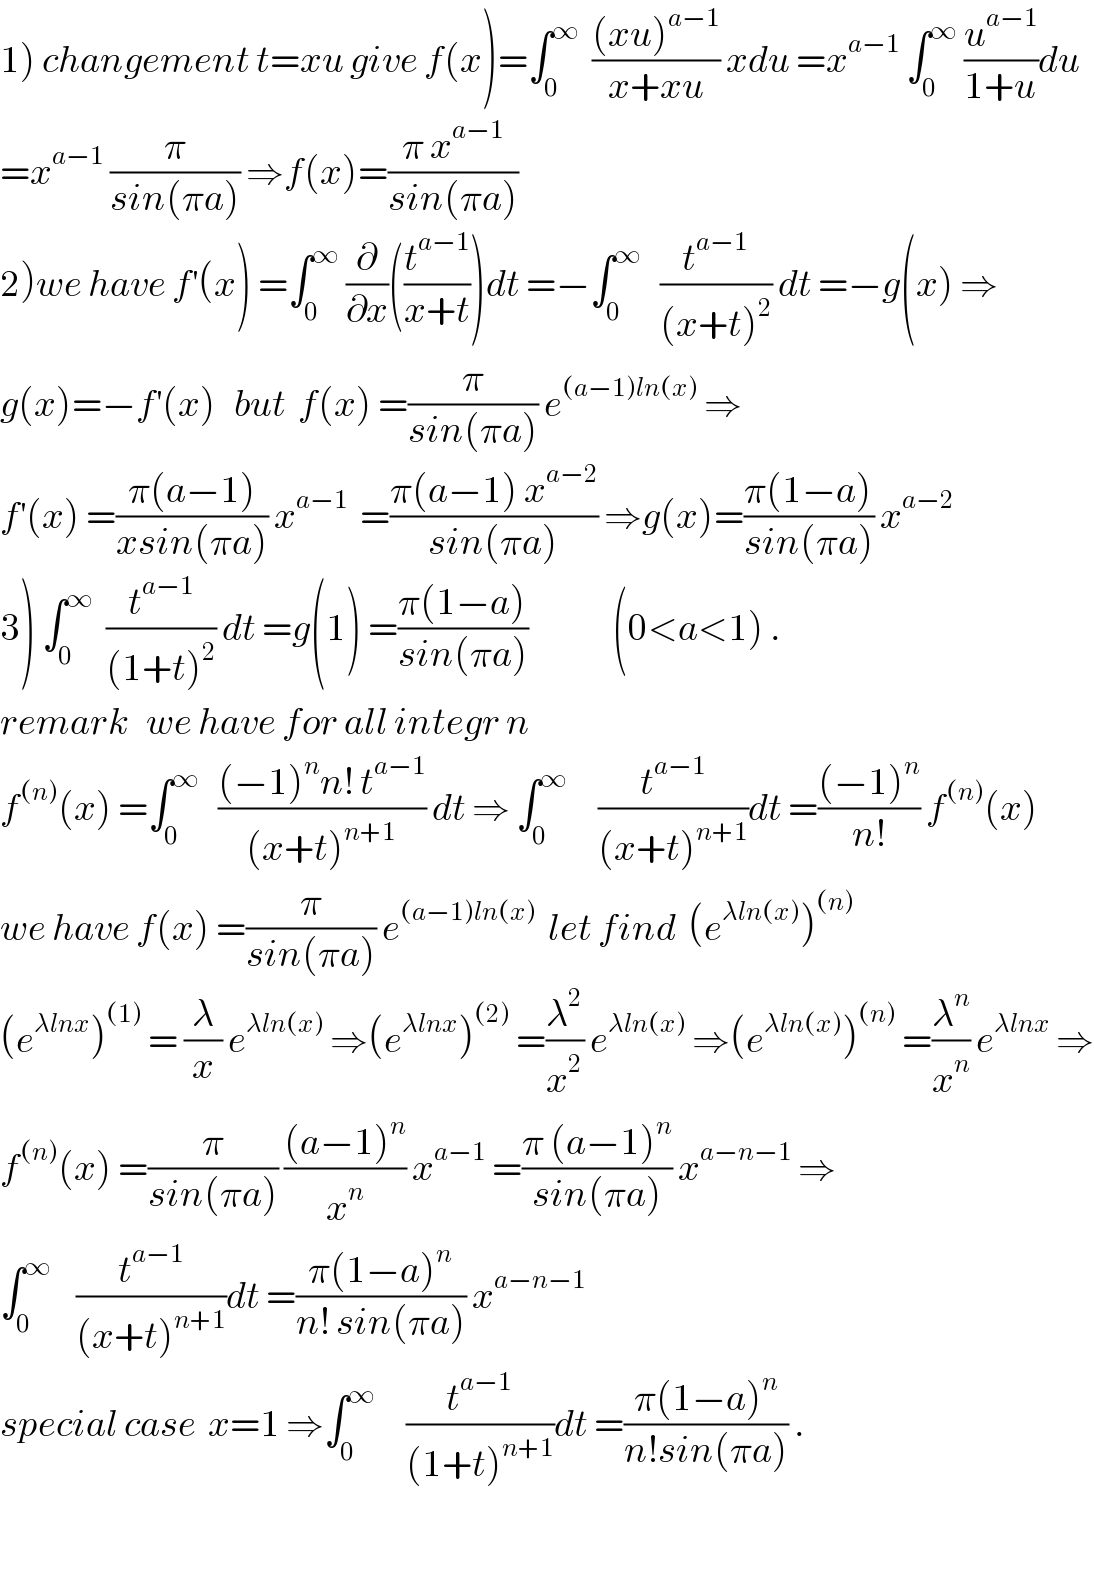 1) changement t=xu give f(x)=∫_0 ^∞   (((xu)^(a−1) )/(x+xu)) xdu =x^(a−1)  ∫_0 ^∞  (u^(a−1) /(1+u))du  =x^(a−1)  (π/(sin(πa))) ⇒f(x)=((π x^(a−1) )/(sin(πa)))  2)we have f^′ (x) =∫_0 ^∞  (∂/∂x)((t^(a−1) /(x+t)))dt =−∫_0 ^∞    (t^(a−1) /((x+t)^2 )) dt =−g(x) ⇒  g(x)=−f^′ (x)   but  f(x) =(π/(sin(πa))) e^((a−1)ln(x))  ⇒  f^′ (x) =((π(a−1))/(xsin(πa))) x^(a−1)   =((π(a−1) x^(a−2) )/(sin(πa))) ⇒g(x)=((π(1−a))/(sin(πa))) x^(a−2)   3) ∫_0 ^∞   (t^(a−1) /((1+t)^2 )) dt =g(1) =((π(1−a))/(sin(πa)))              (0<a<1) .  remark   we have for all integr n  f^((n)) (x) =∫_0 ^∞    (((−1)^n n! t^(a−1) )/((x+t)^(n+1) )) dt ⇒ ∫_0 ^∞      (t^(a−1) /((x+t)^(n+1) ))dt =(((−1)^n )/(n!)) f^((n)) (x)   we have f(x) =(π/(sin(πa))) e^((a−1)ln(x))   let find  (e^(λln(x)) )^((n))   (e^(λlnx) )^((1))  = (λ/x) e^(λln(x))  ⇒(e^(λlnx) )^((2))  =(λ^2 /x^2 ) e^(λln(x))  ⇒(e^(λln(x)) )^((n))  =(λ^n /x^n ) e^(λlnx)  ⇒  f^((n)) (x) =(π/(sin(πa))) (((a−1)^n )/x^n ) x^(a−1)  =((π (a−1)^n )/(sin(πa))) x^(a−n−1)  ⇒  ∫_0 ^∞     (t^(a−1) /((x+t)^(n+1) ))dt =((π(1−a)^n )/(n! sin(πa))) x^(a−n−1)   special case  x=1 ⇒∫_0 ^∞      (t^(a−1) /((1+t)^(n+1) ))dt =((π(1−a)^n )/(n!sin(πa))) .    